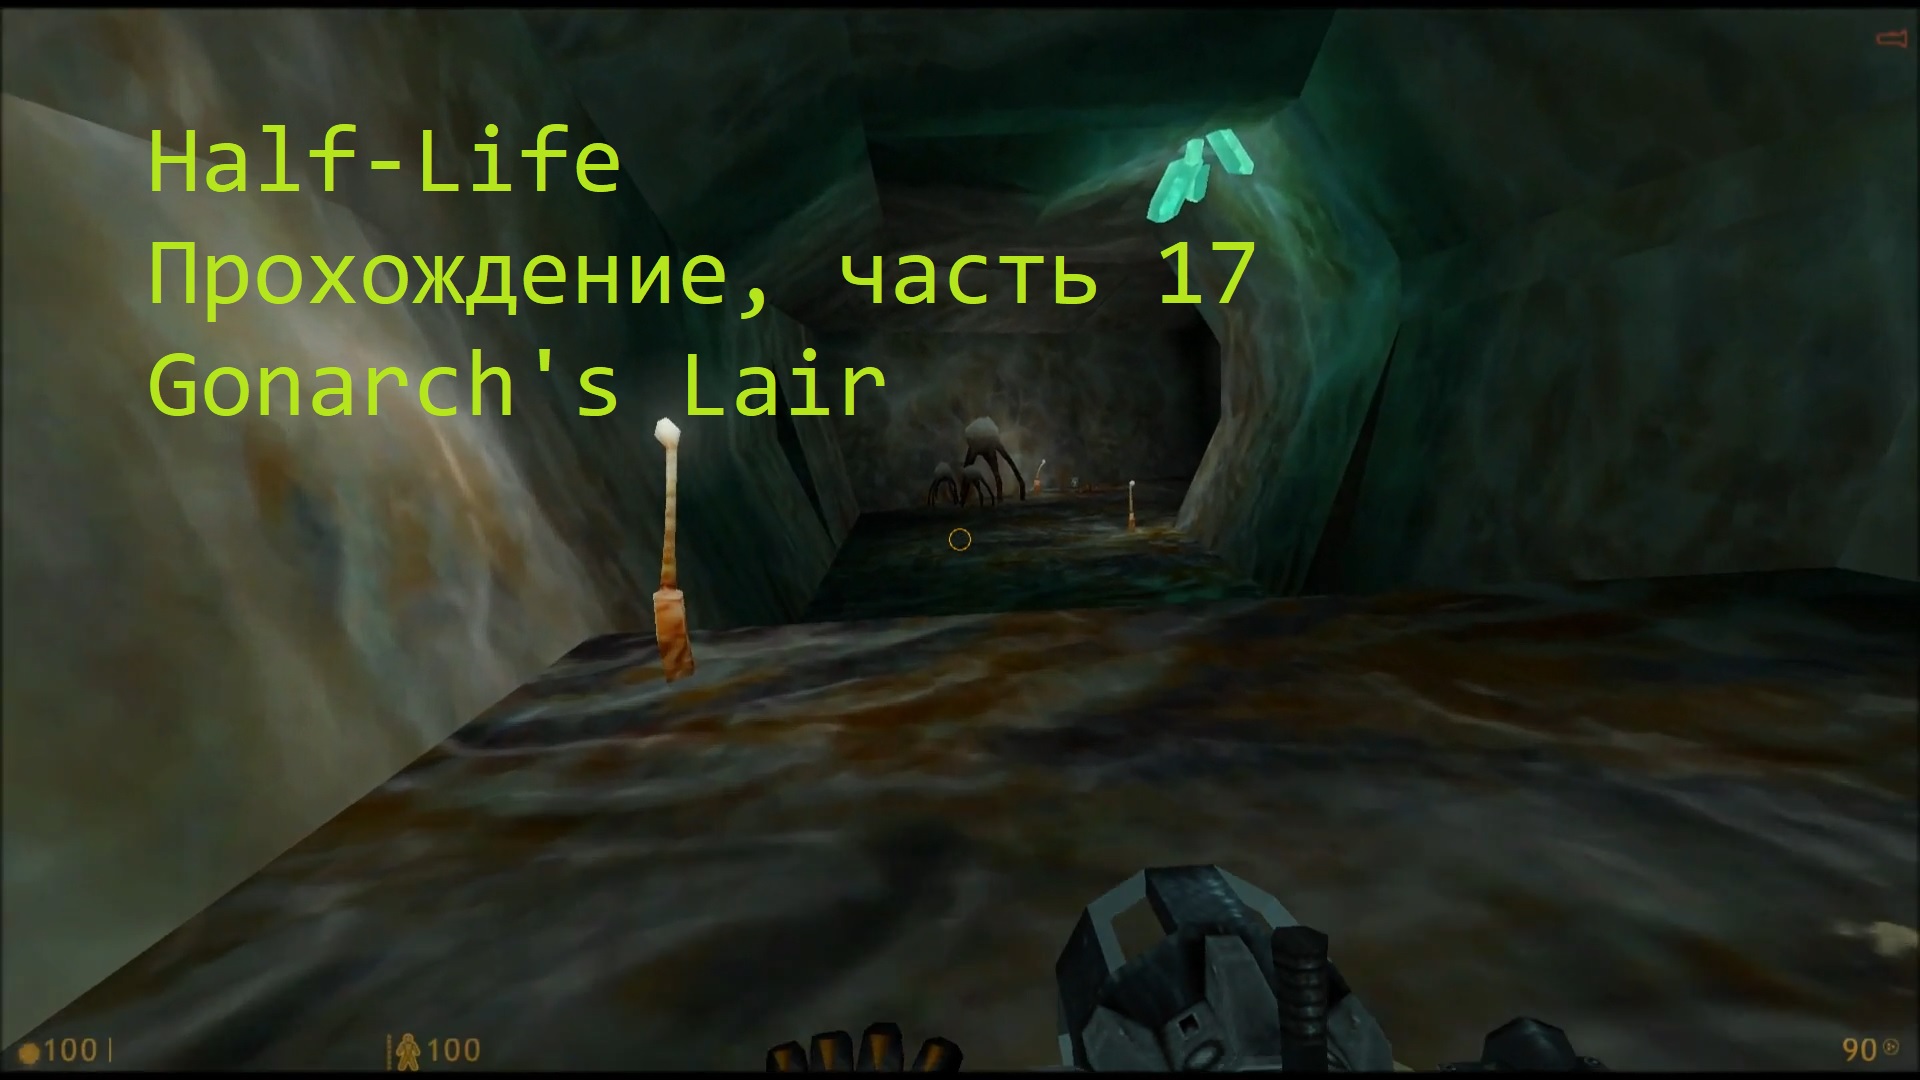 Half-Life, Прохождение, часть 17 - Gonarch's Lair